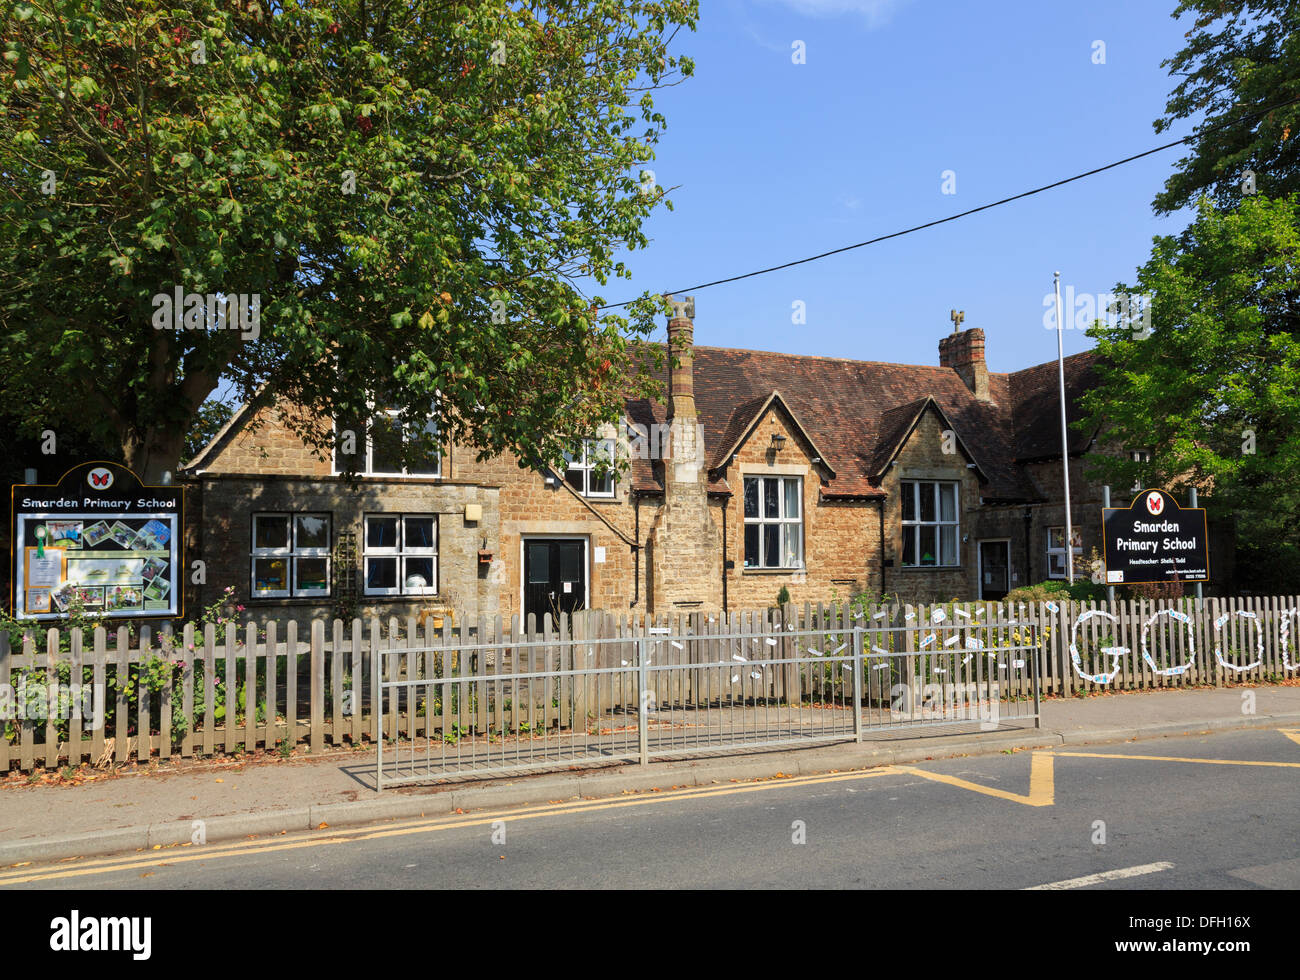 Barriere durch Haupteingang Tor zum alten Dorf-Grundschule in Smarden, Kent, England, UK, Großbritannien Stockfoto